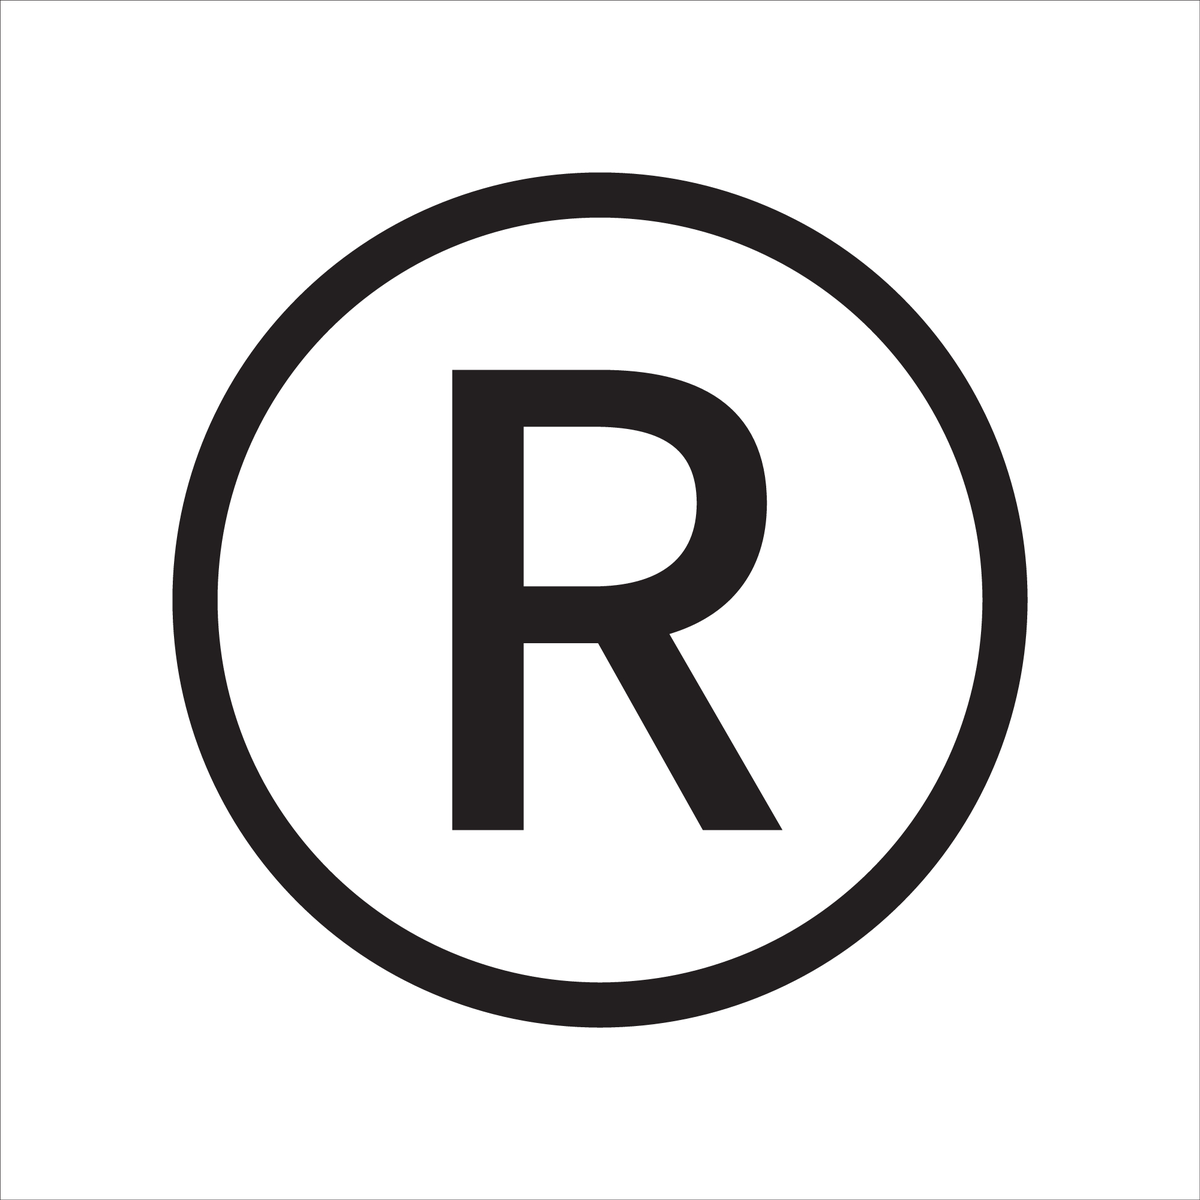 Зарегистрированный товарный знак. Буква r в кружочке. Значок r. Знак r в кружке на товарной марке. R quality